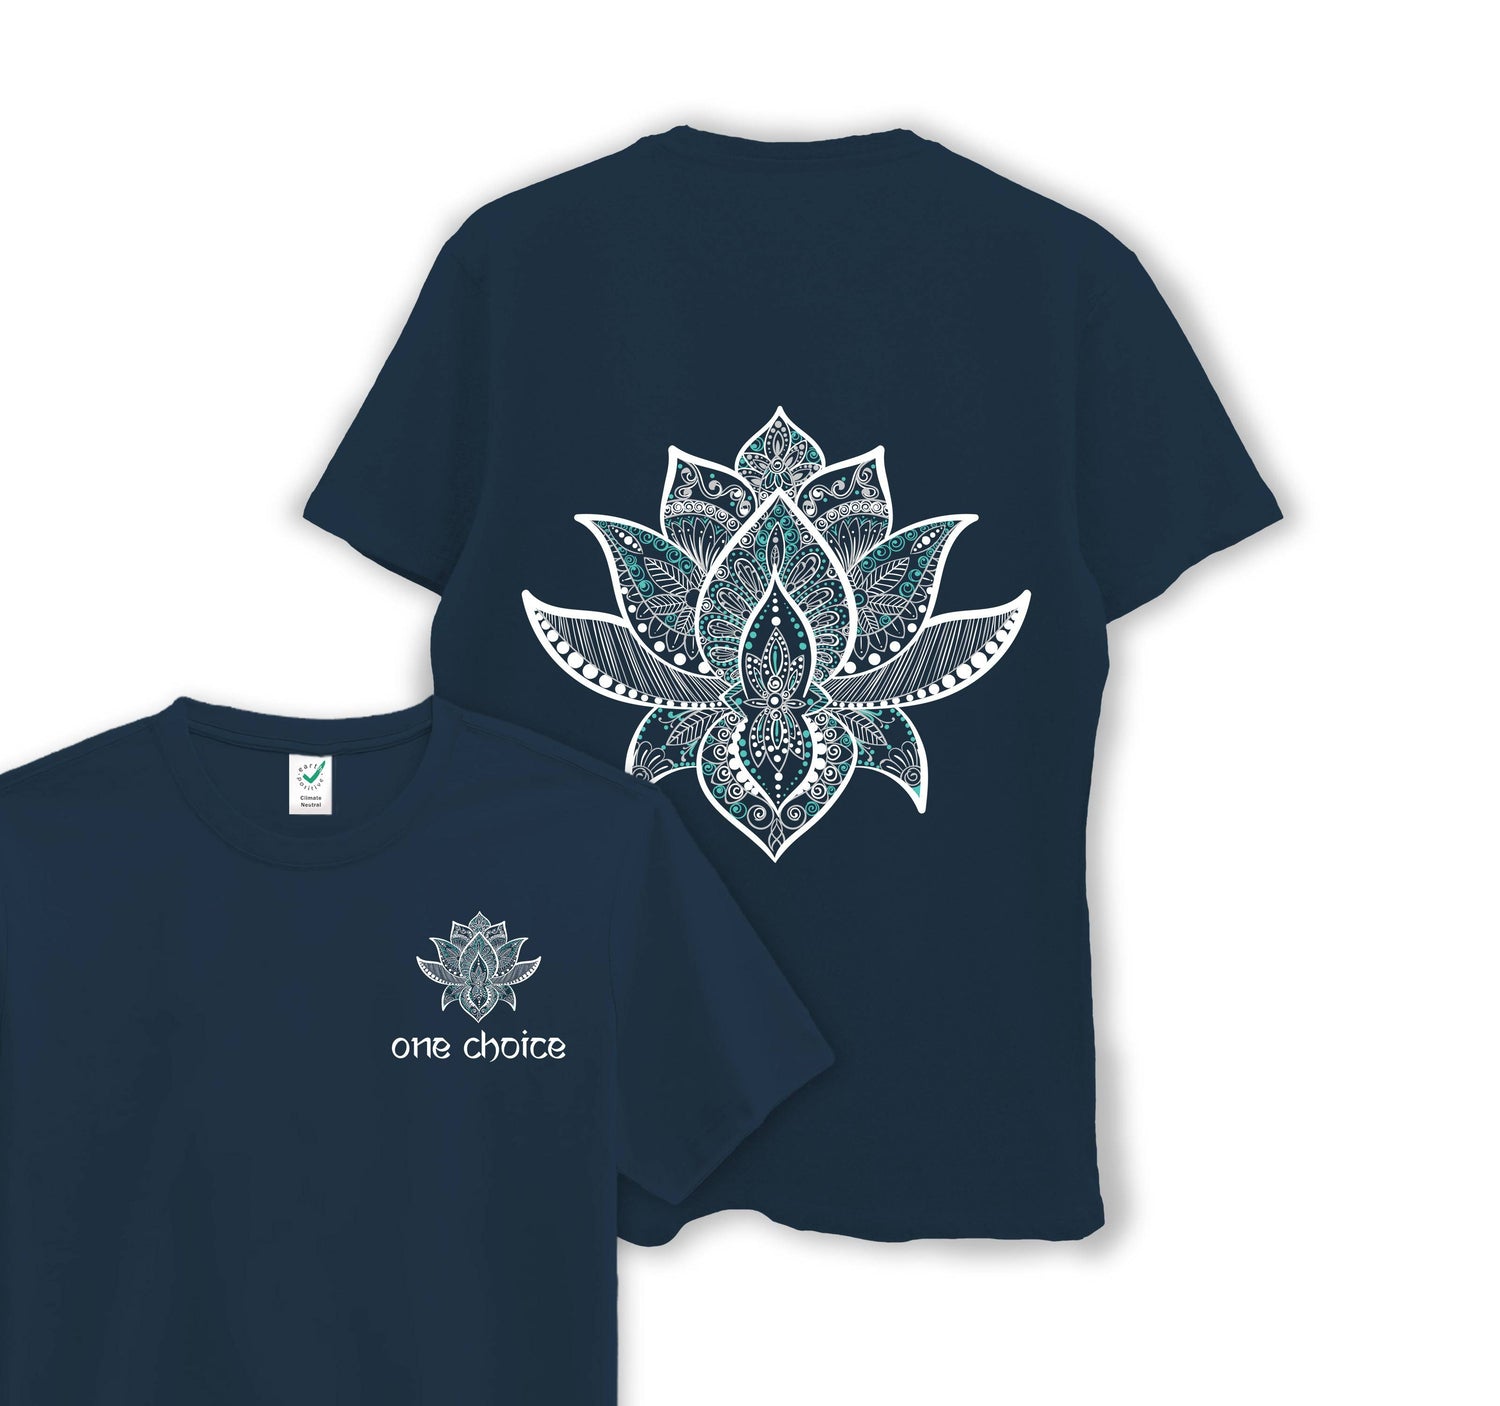 YOGISHOP, Yoga T-shirt Batwing lotus - ivory/copper